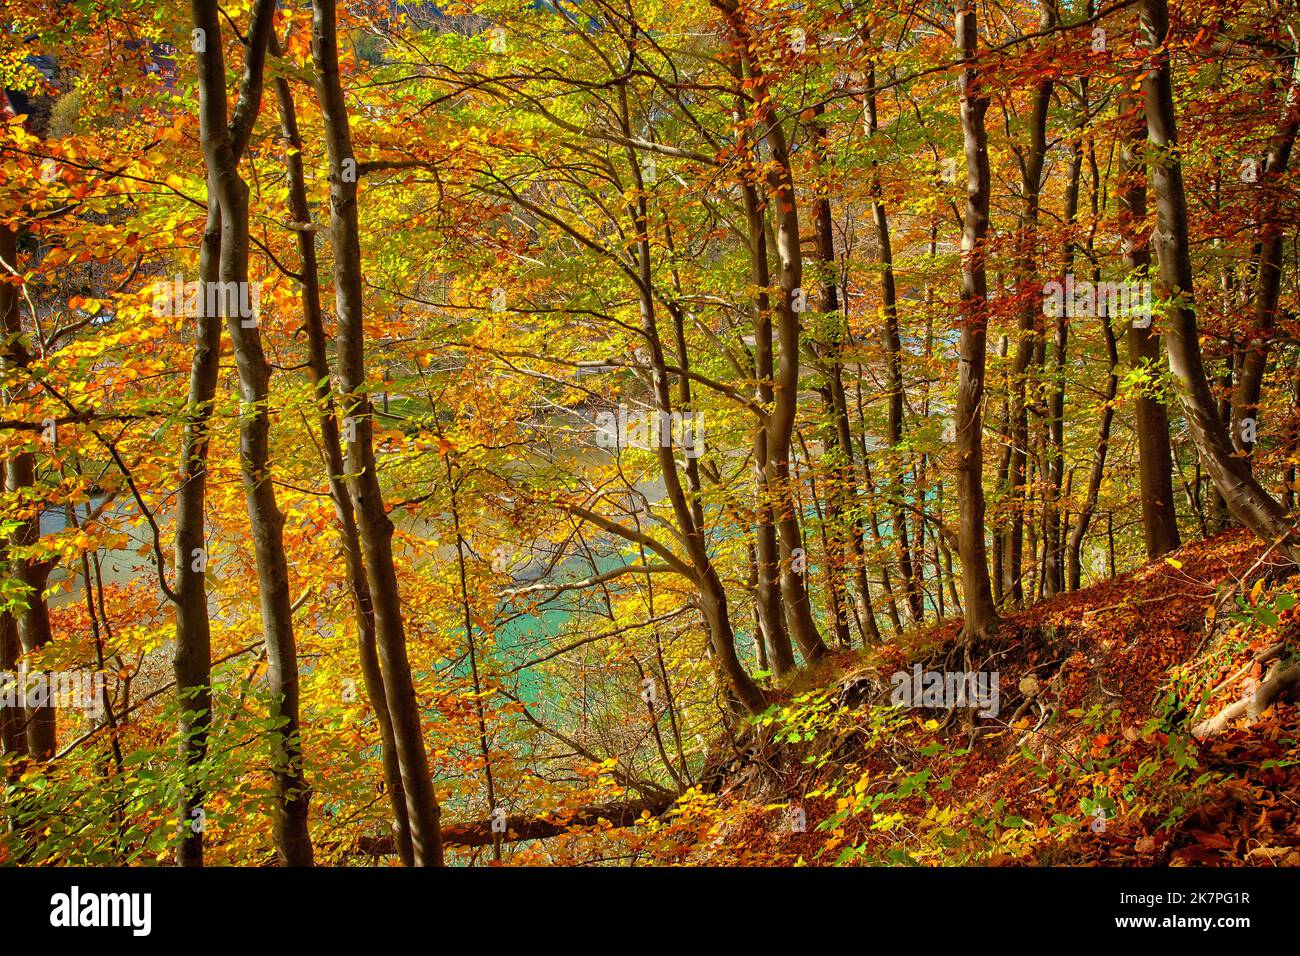 DE - BAVARIA: Herbstlicher Wald oberhalb der Isar bei Bad Tölz, Oberbayern. (HDR-Fotografie von Edmund Nagele FRPS) Stockfoto